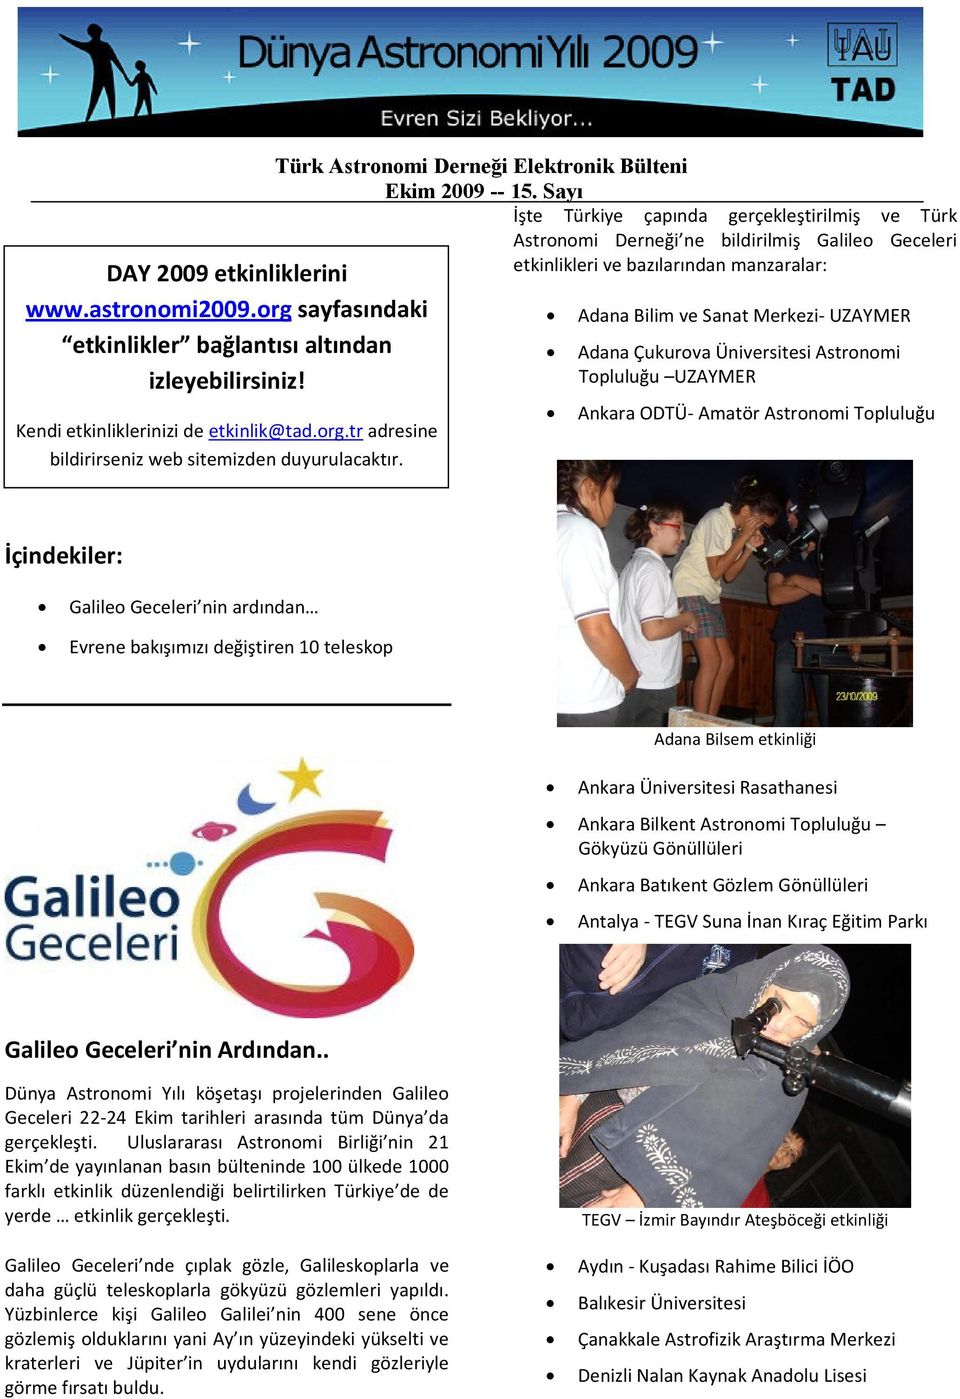 Sanat Merkezi- UZAYMER Adana Çukurova Üniversitesi Astronomi Topluluğu UZAYMER Ankara ODTÜ- Amatör Astronomi Topluluğu İçindekiler: Galileo Geceleri nin ardından Evrene bakışımızı değiştiren 10